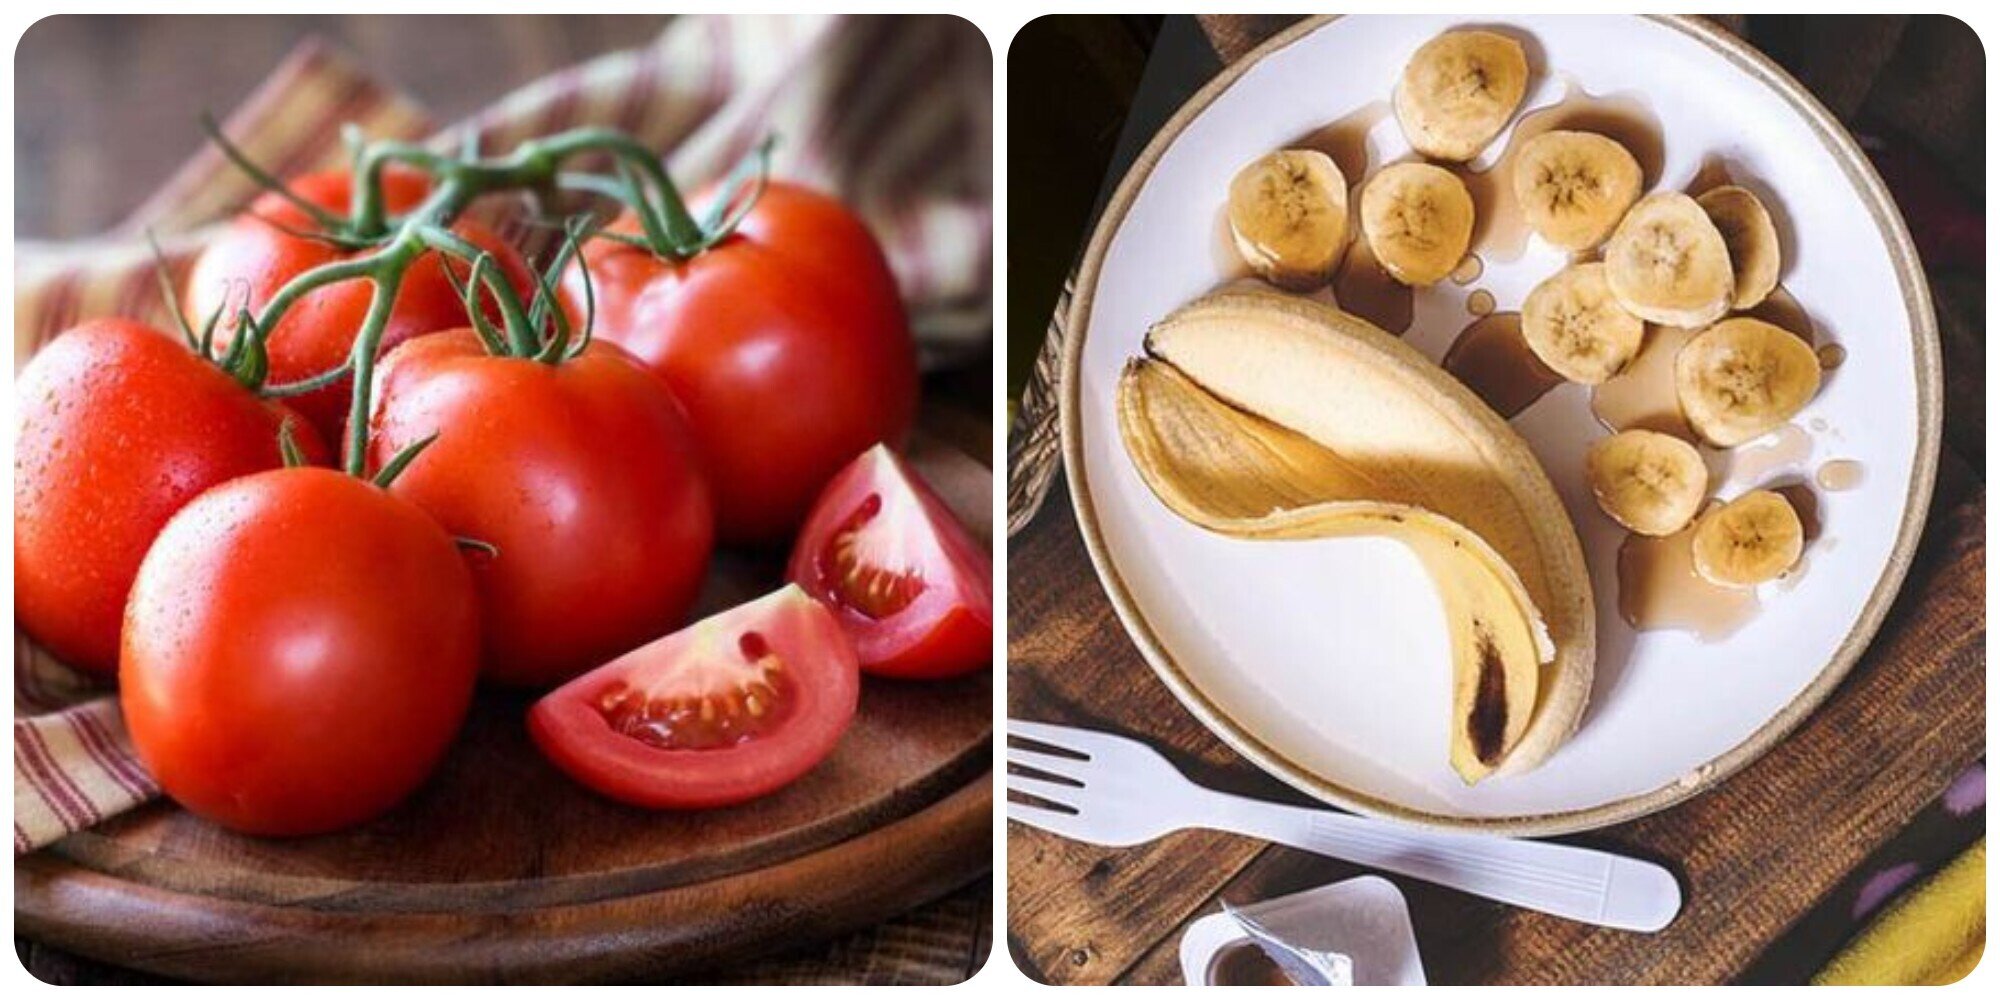 Cà chua và chuối là những thực phẩm không nên ăn khi đói bụng.